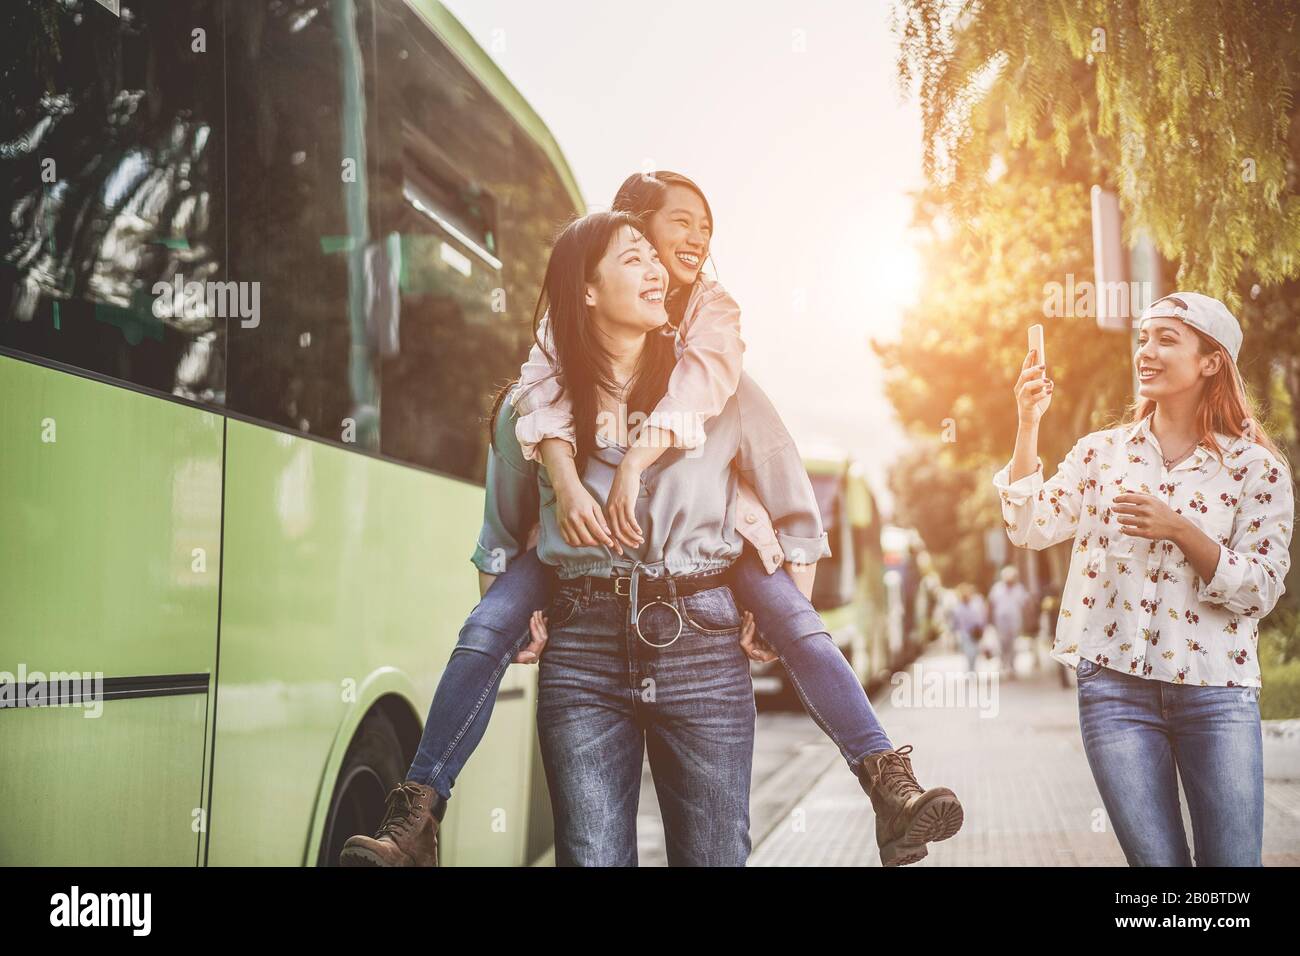 Fröhliche asiatische Freunde machen selfie-fotos mit Smartphones am Busbahnhof - Junge Studenten, die sich mit Technologietrends lustig machen - Freundschaft, Unive Stockfoto